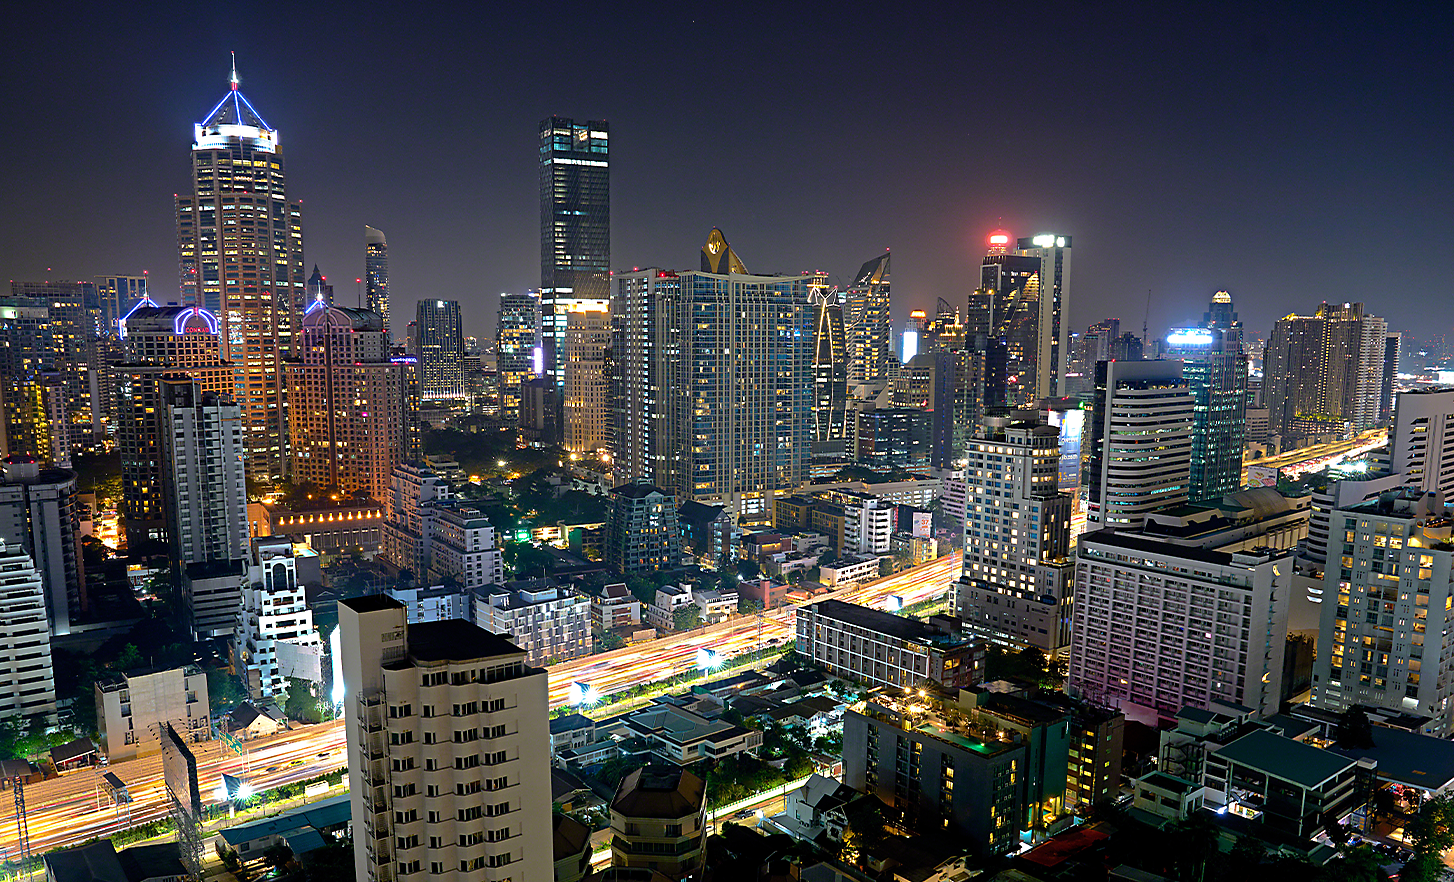 Un paysage urbain de nuit, photographié depuis une position élevée